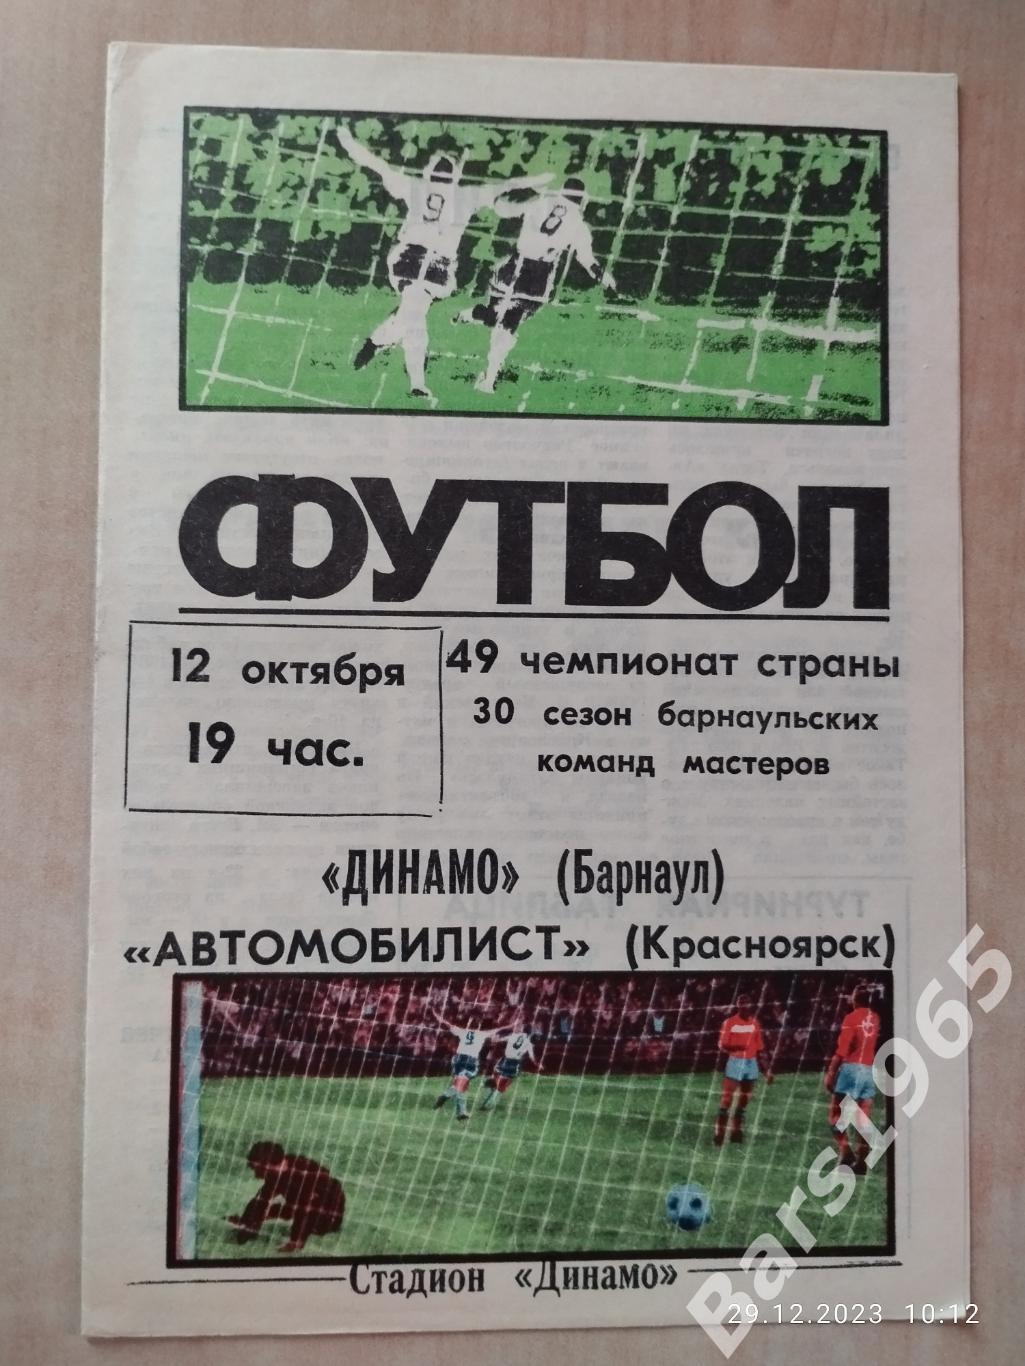 Динамо Барнаул - Автомобилист Красноярск 1986